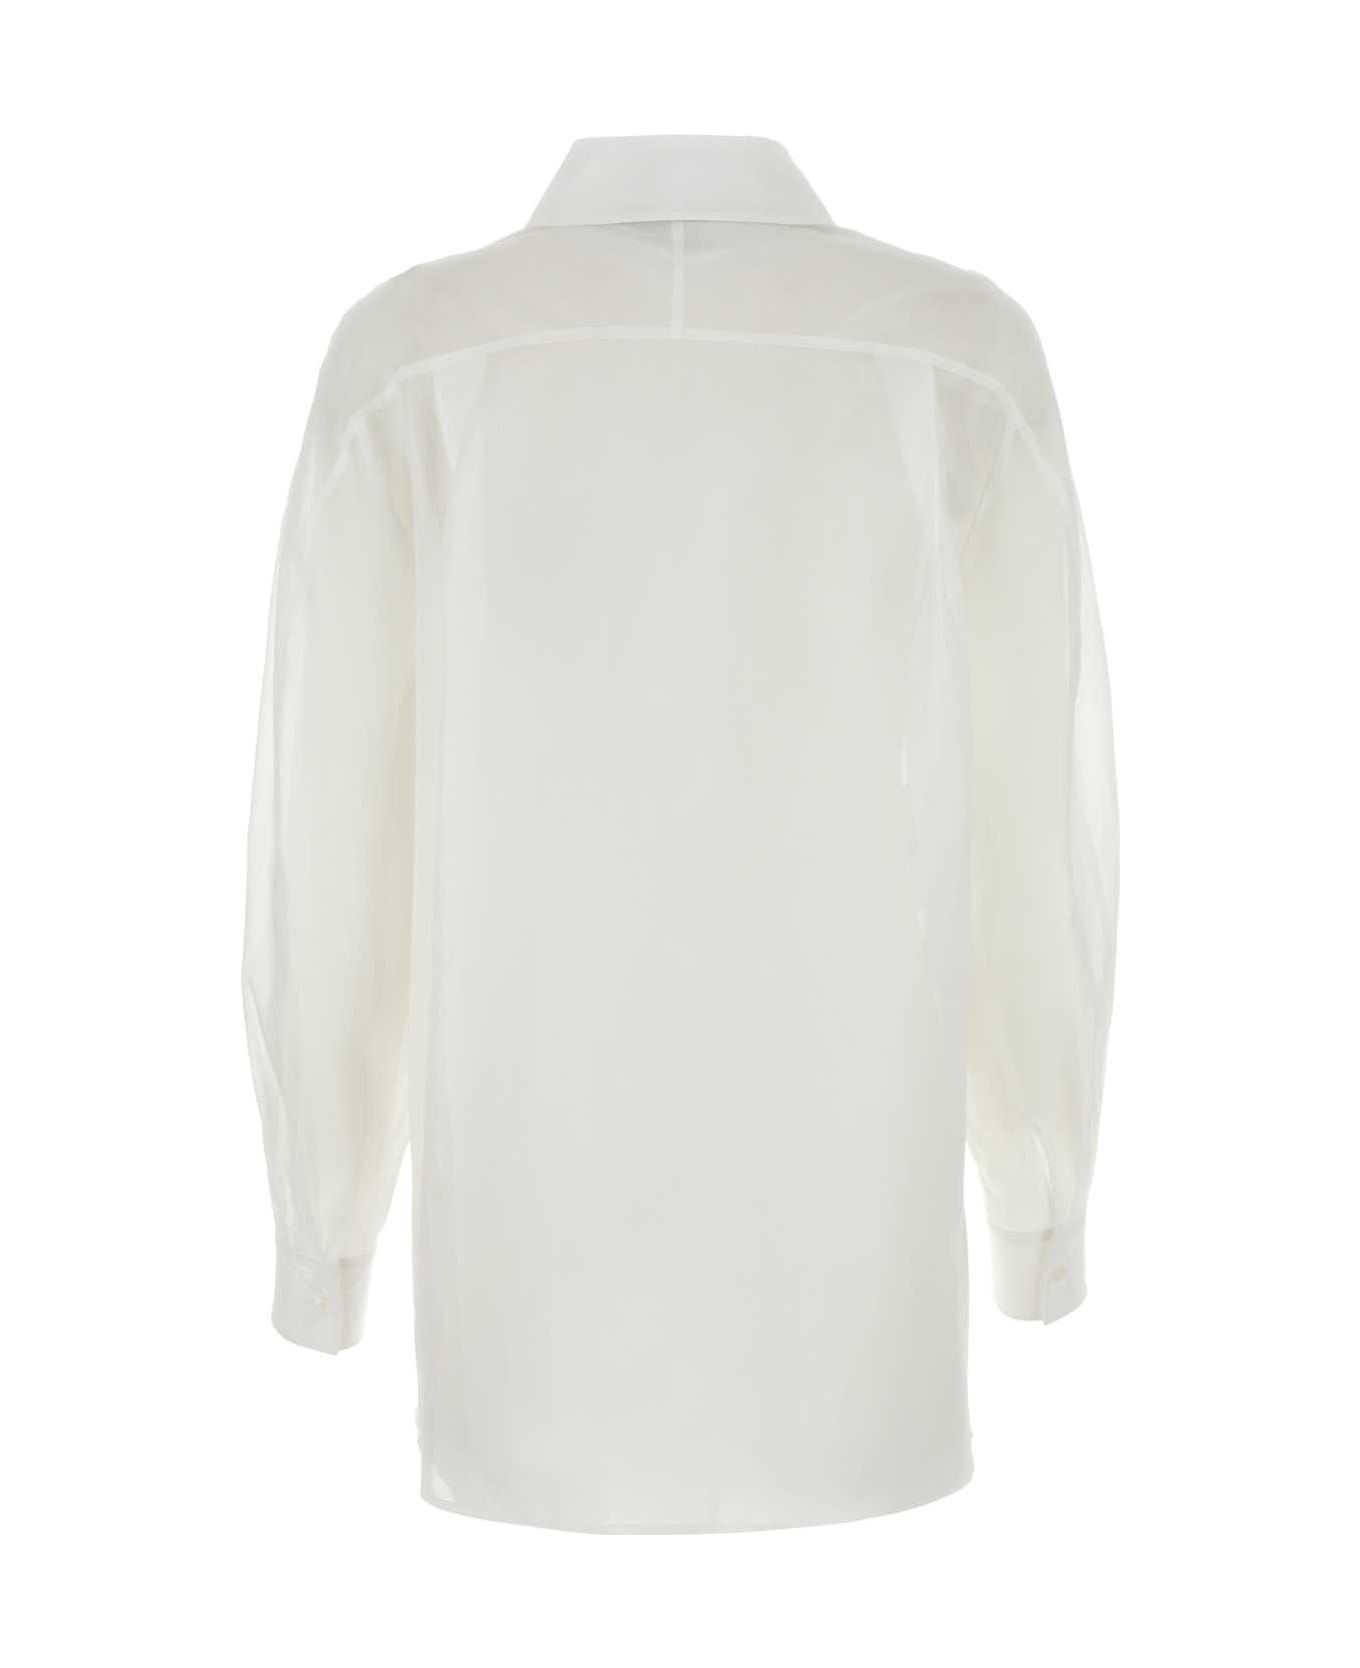 Alberta Ferretti White Cotton Shirt - BIANCO